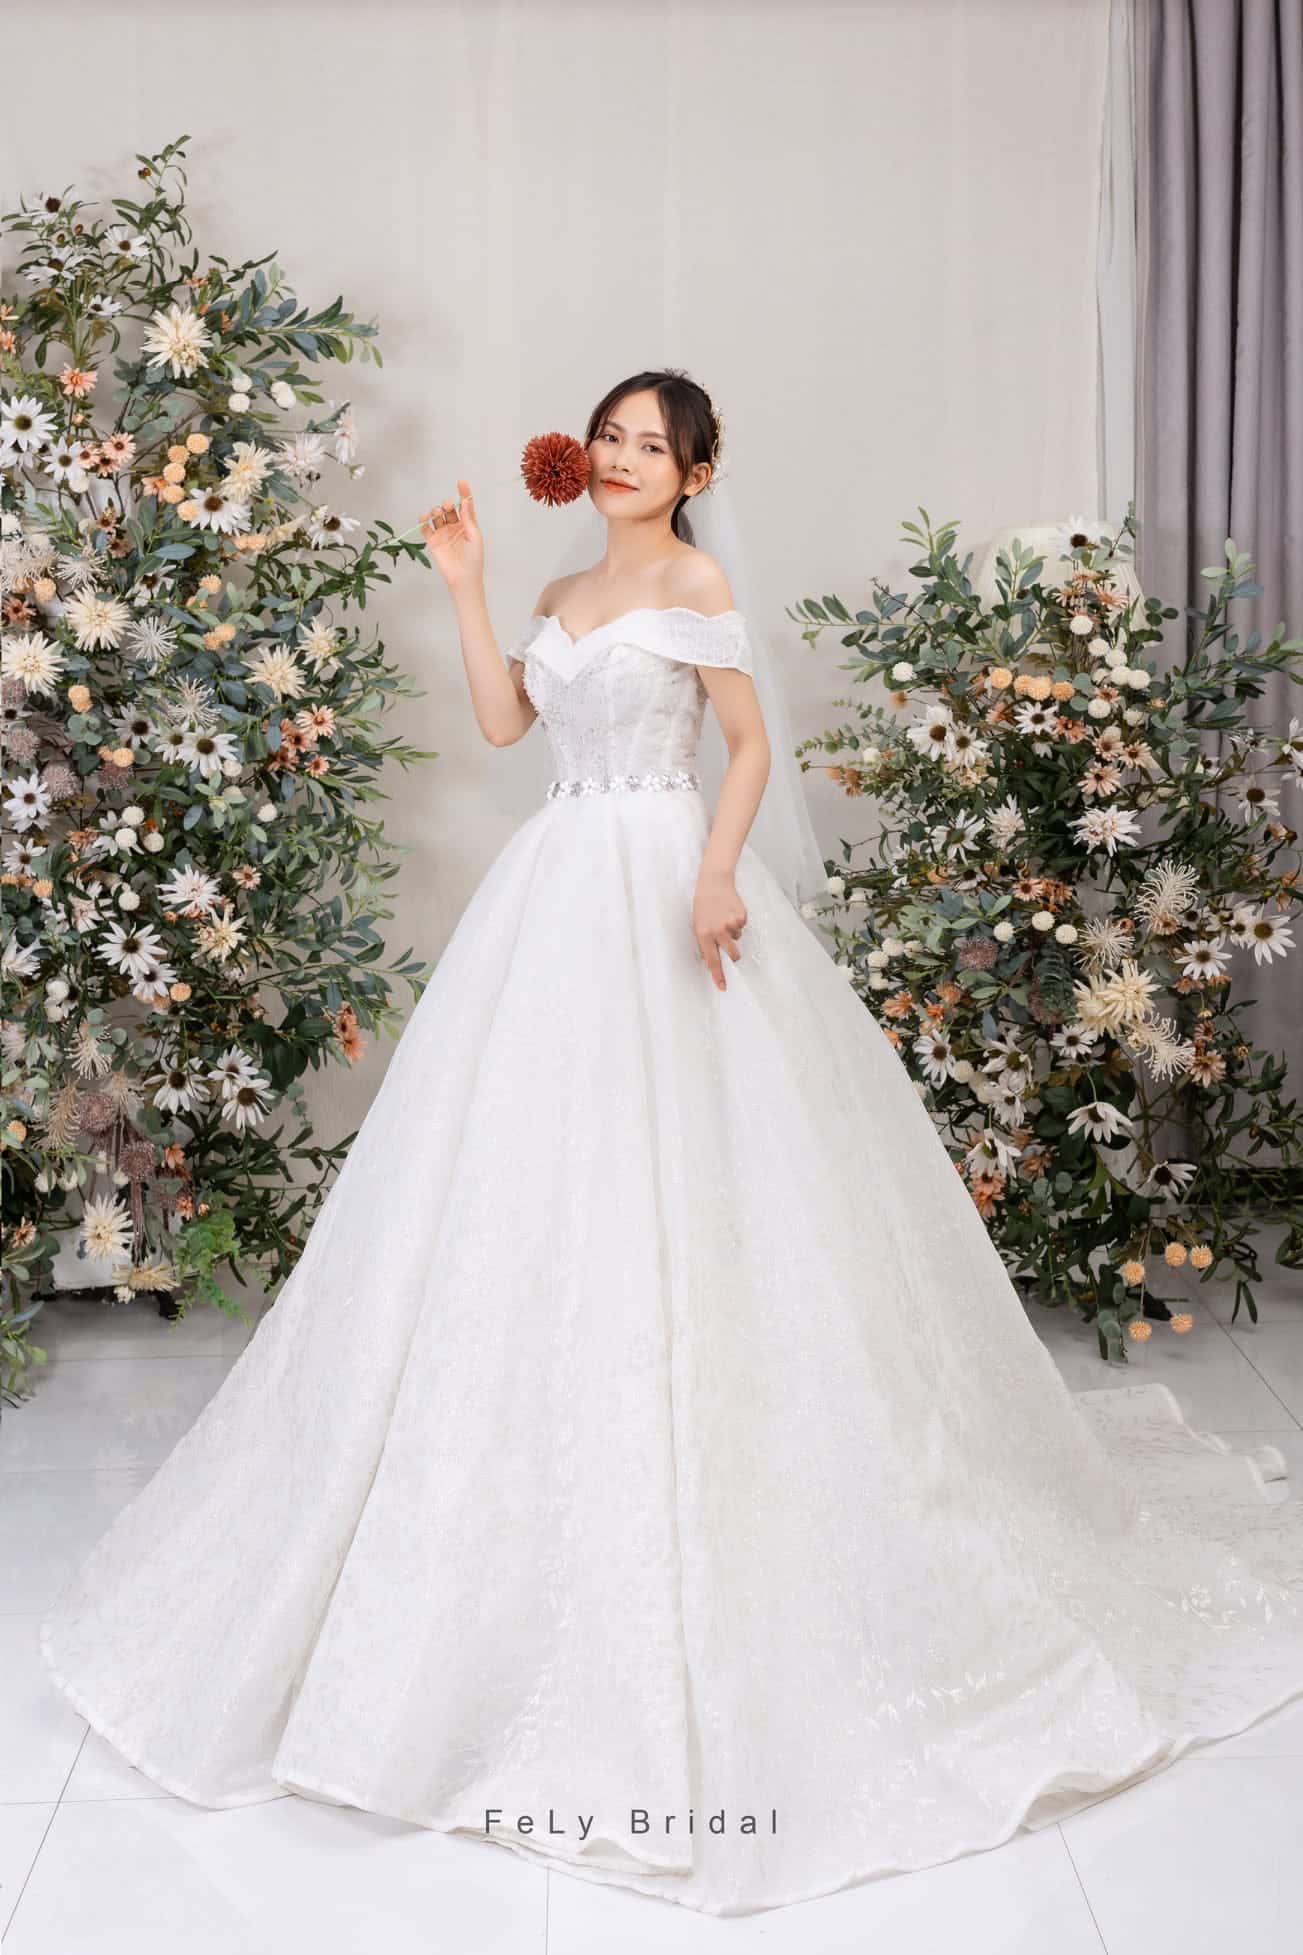 Nhà thiết kế tiết lộ giá váy cưới của vợ Duy Mạnh